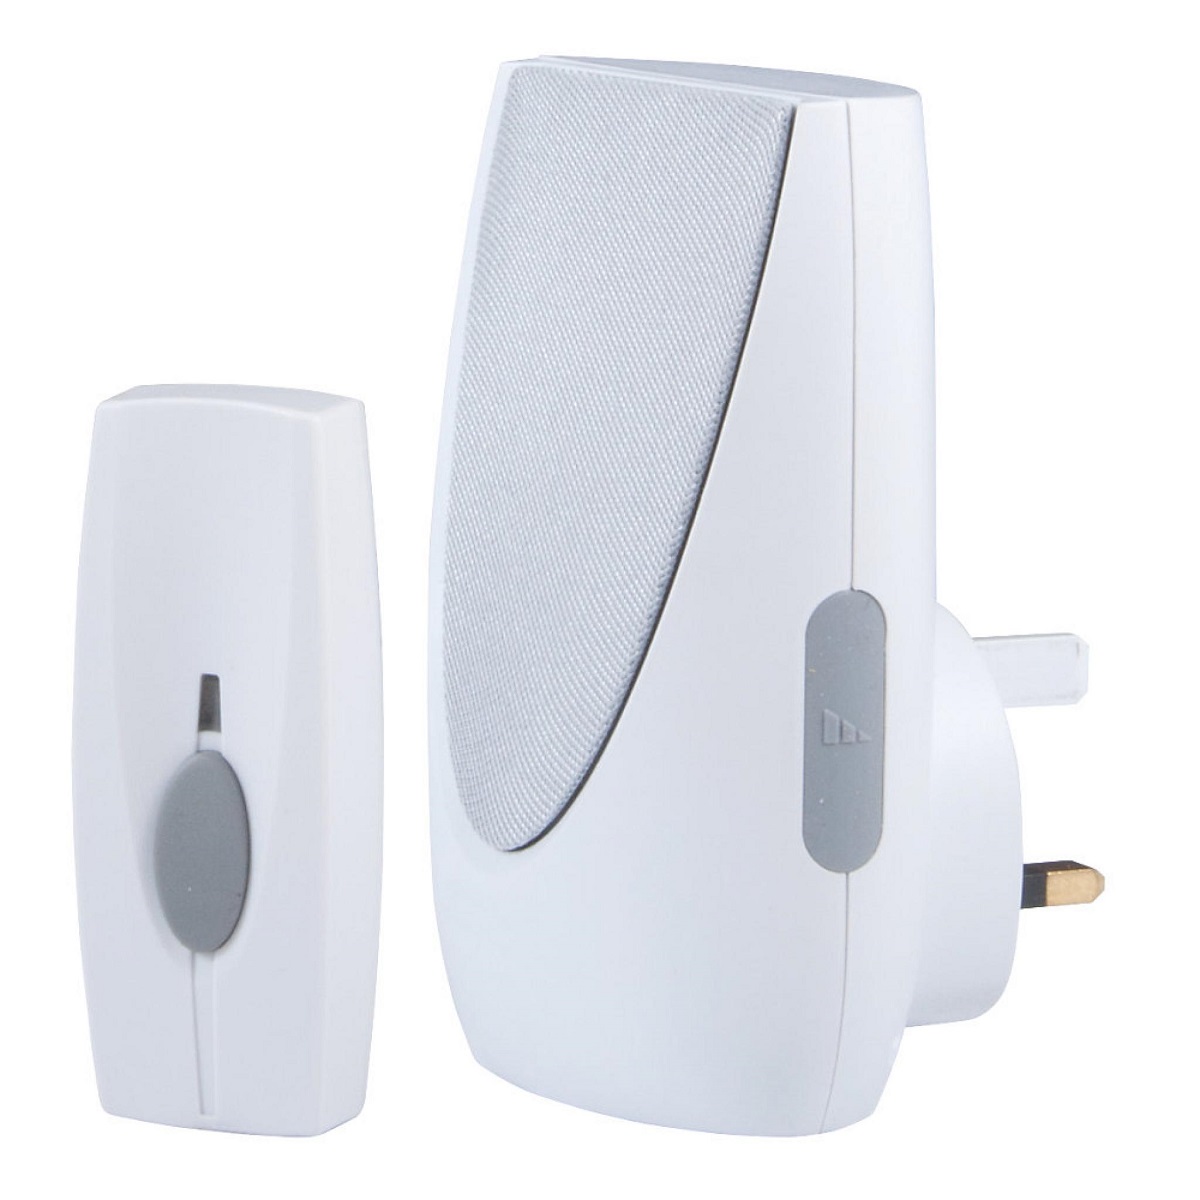 11 Best Plug In Wireless Doorbell for 2023